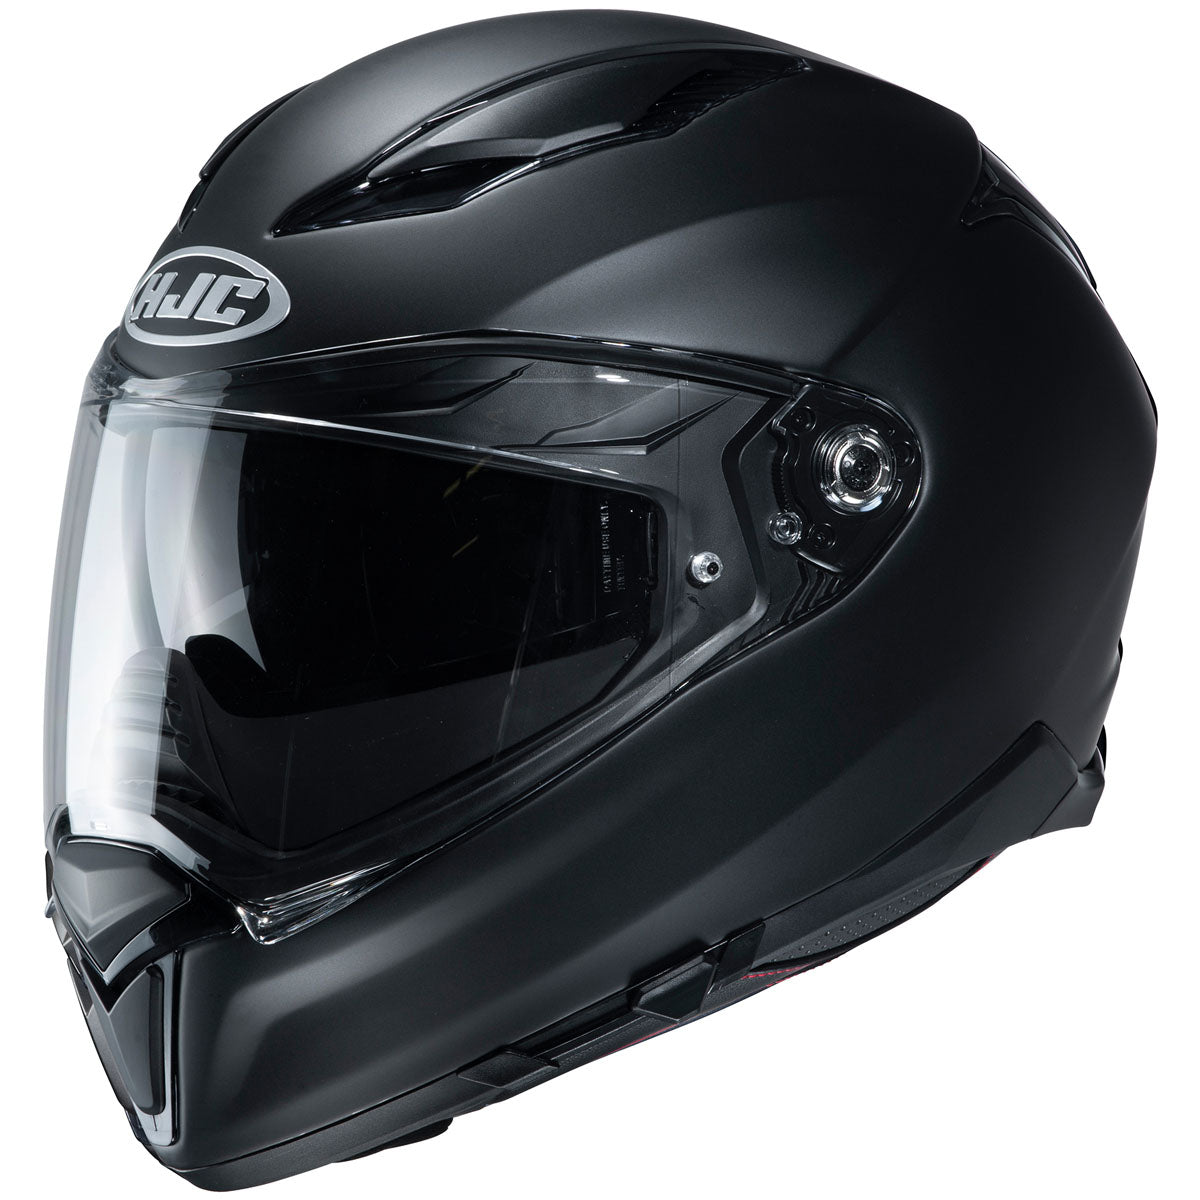 Hjc F70 Helmet - CLOSEOUT